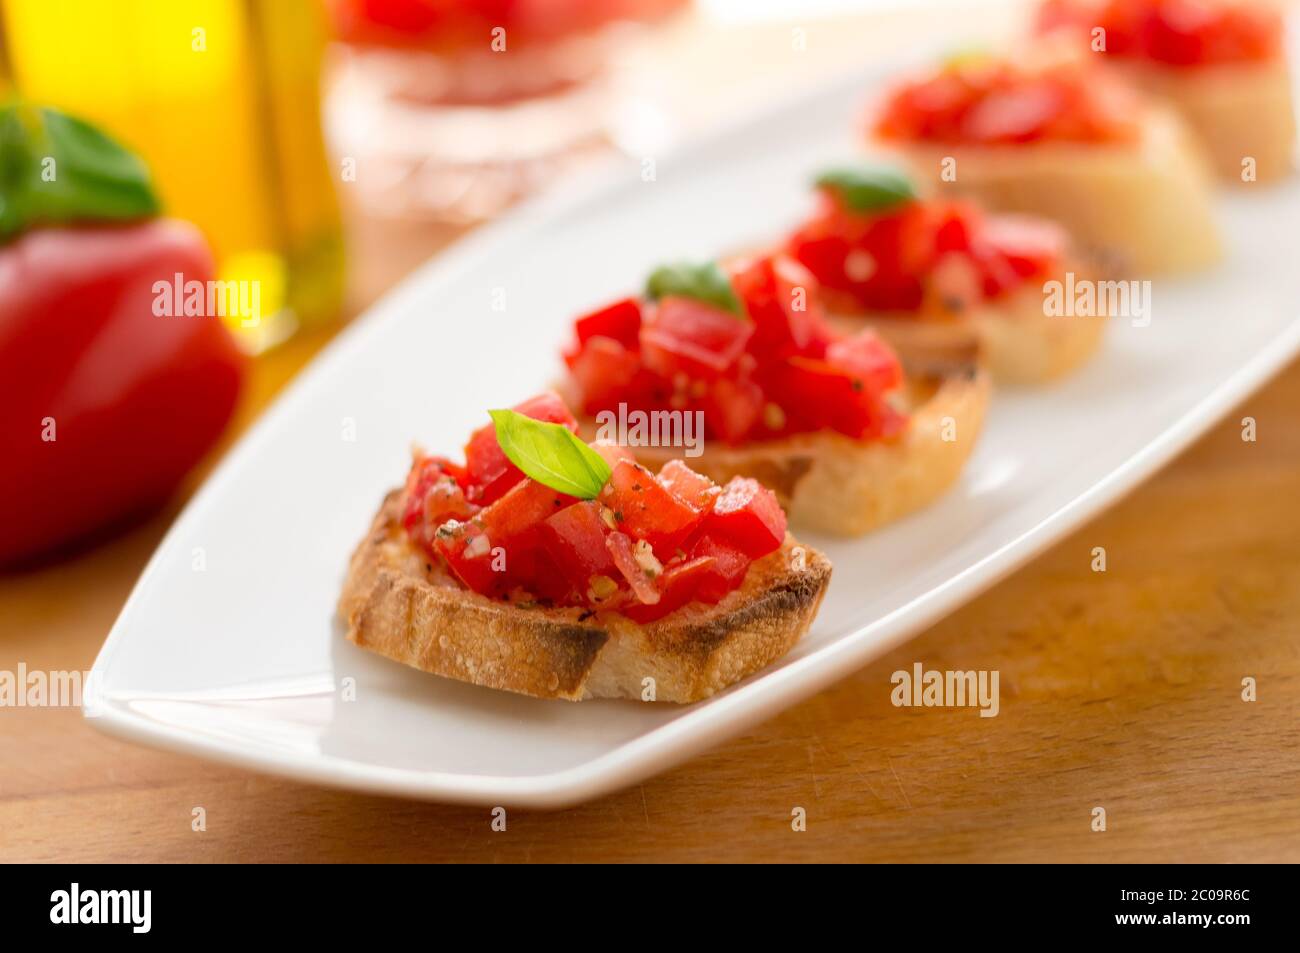 La bruschetta est une nourriture italienne faite de tomates hachées, d'ail, de basilic et d'herbes fraîches sur un pain grillé. Il est généralement servi comme encas ou hors-d'œuvre. Banque D'Images